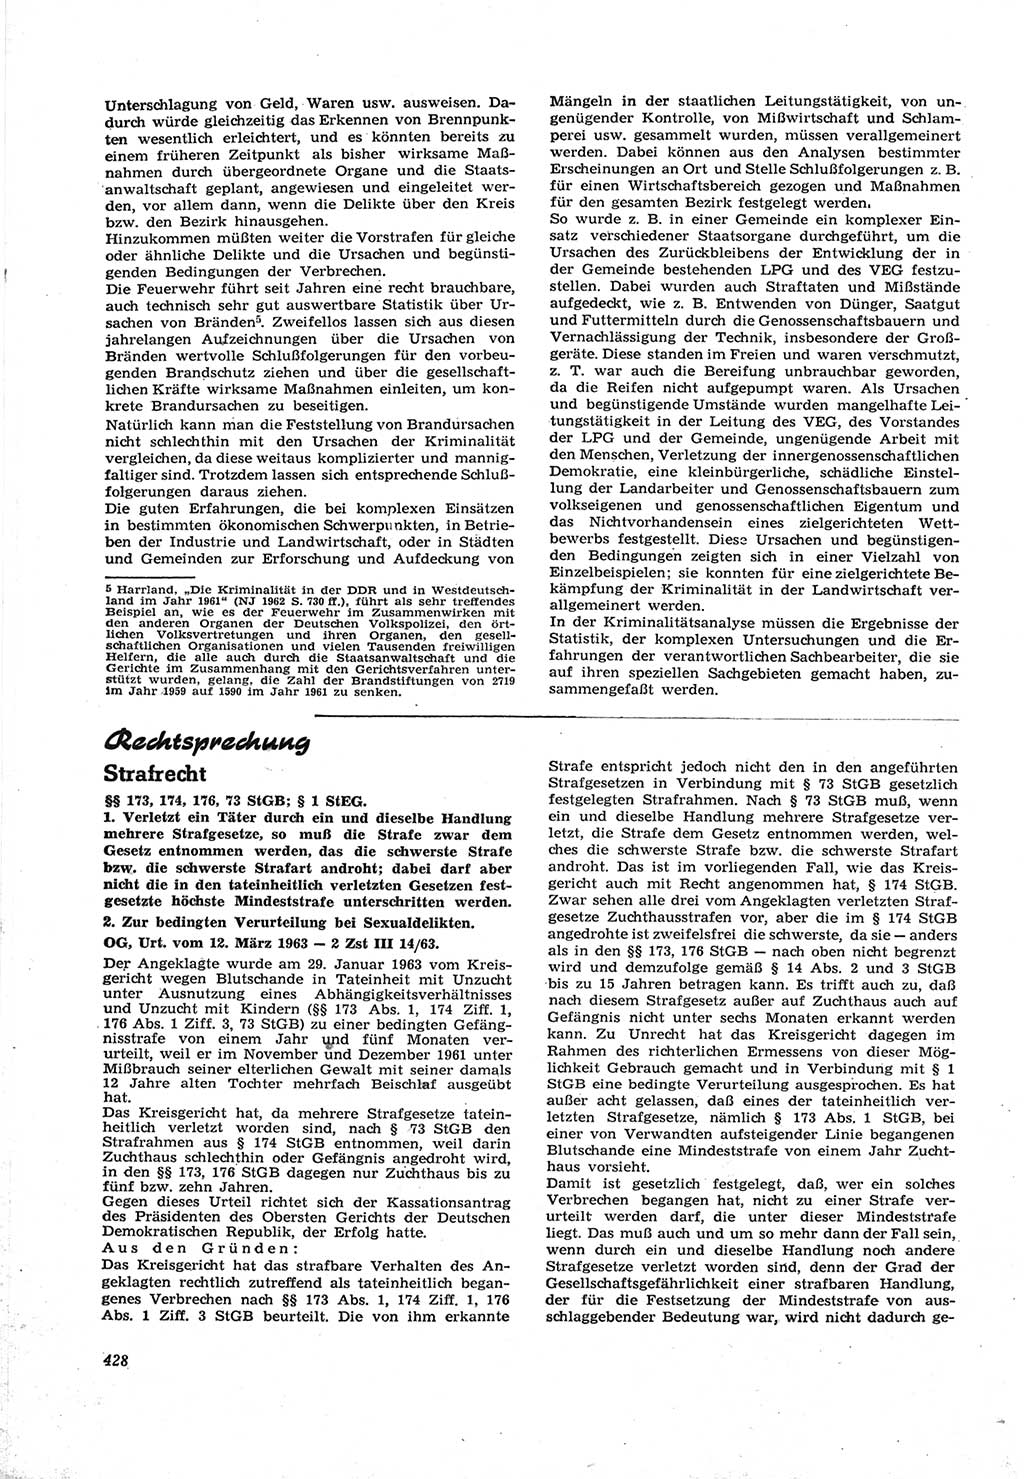 Neue Justiz (NJ), Zeitschrift für Recht und Rechtswissenschaft [Deutsche Demokratische Republik (DDR)], 17. Jahrgang 1963, Seite 428 (NJ DDR 1963, S. 428)